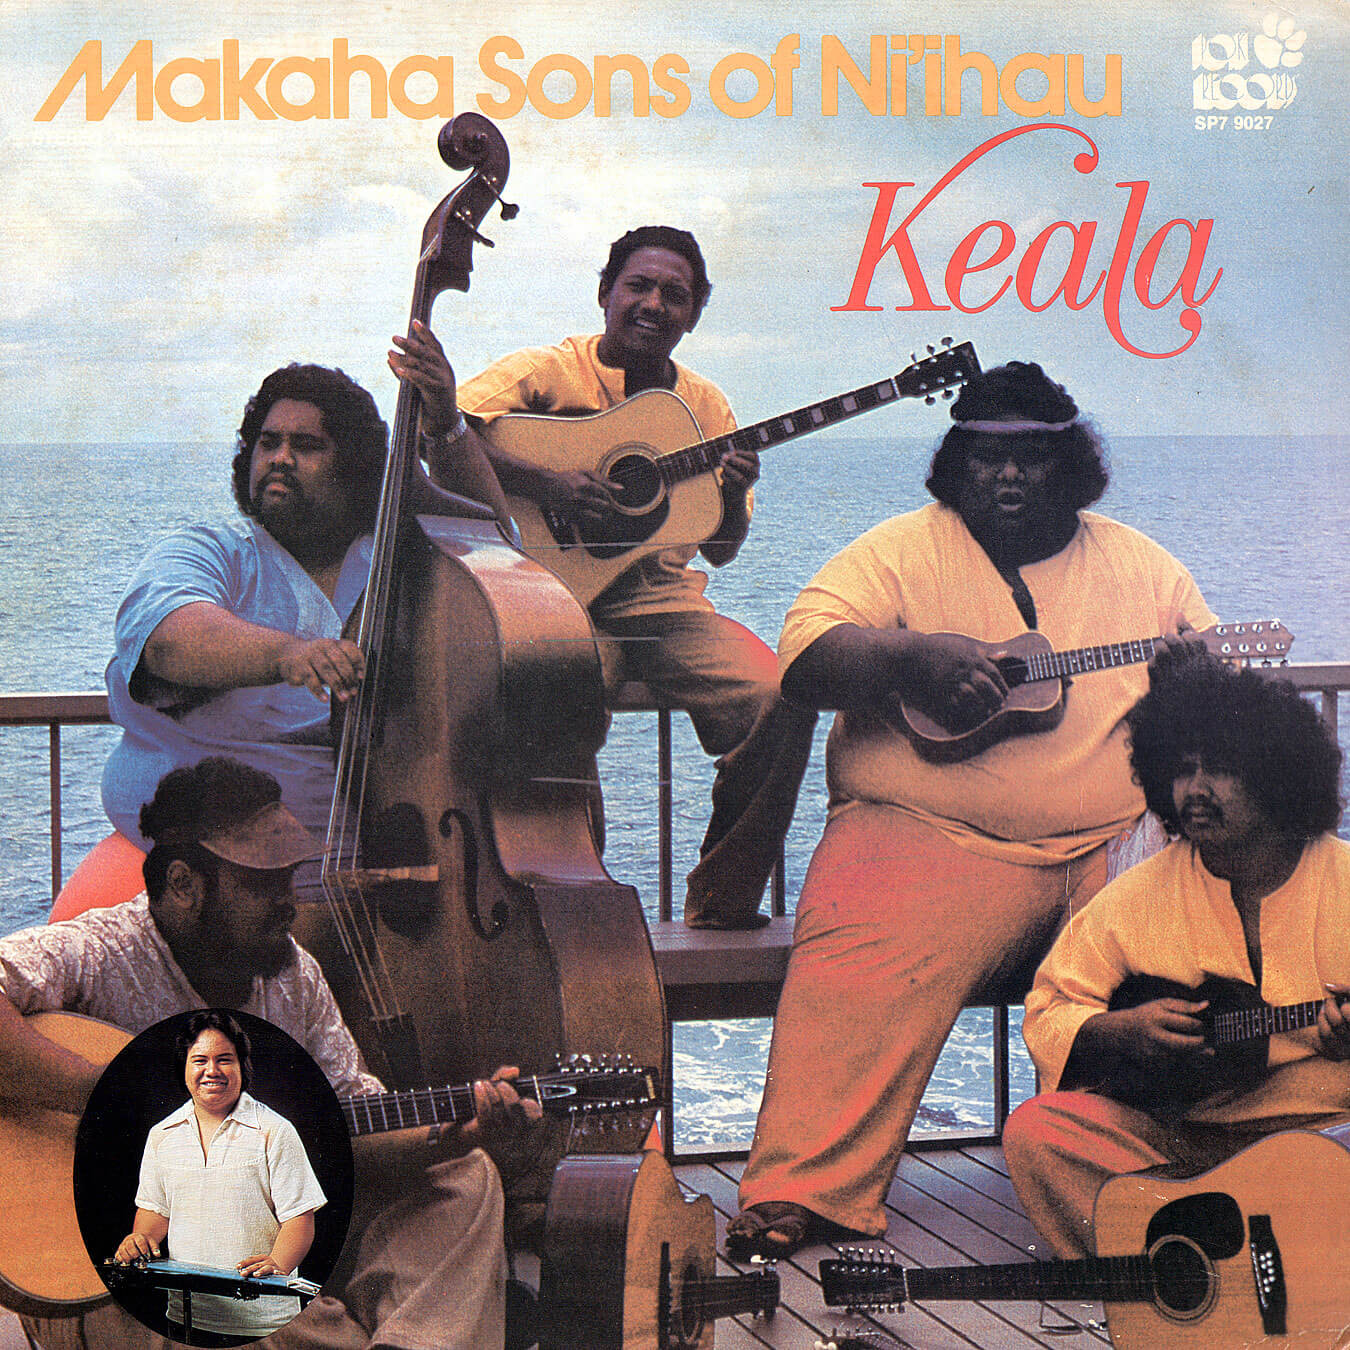 makaha-sons-of-niihau-keala-front